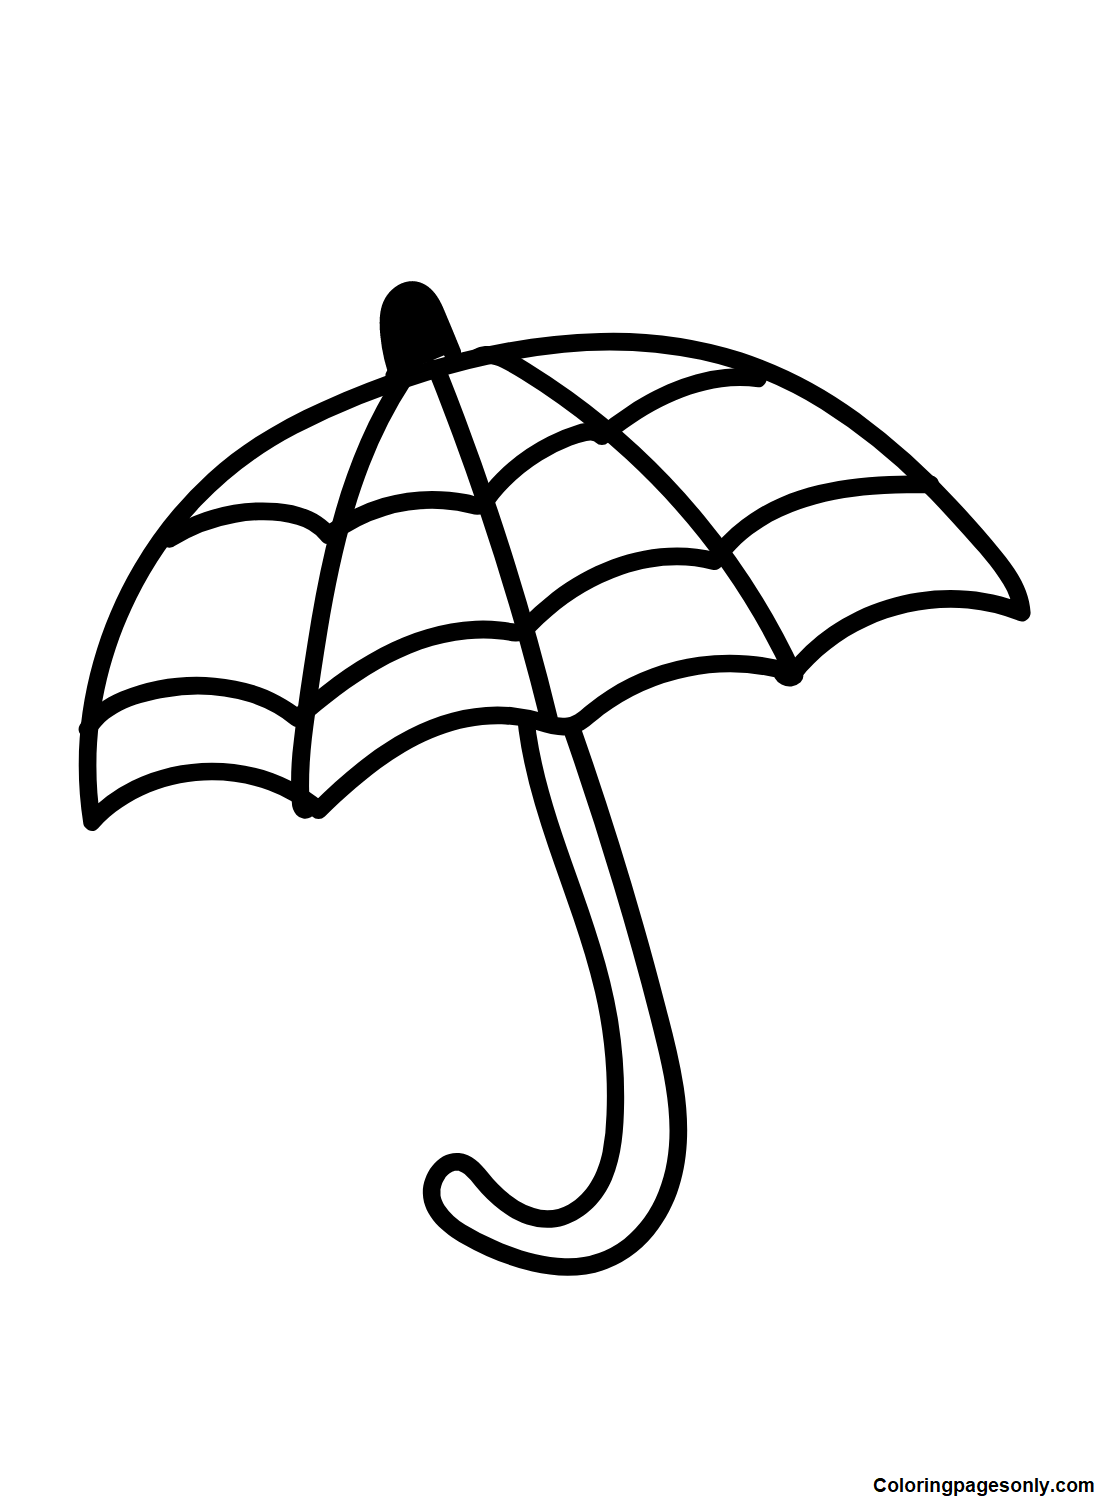 Imagens gratuitas de guarda-chuva da Umbrella